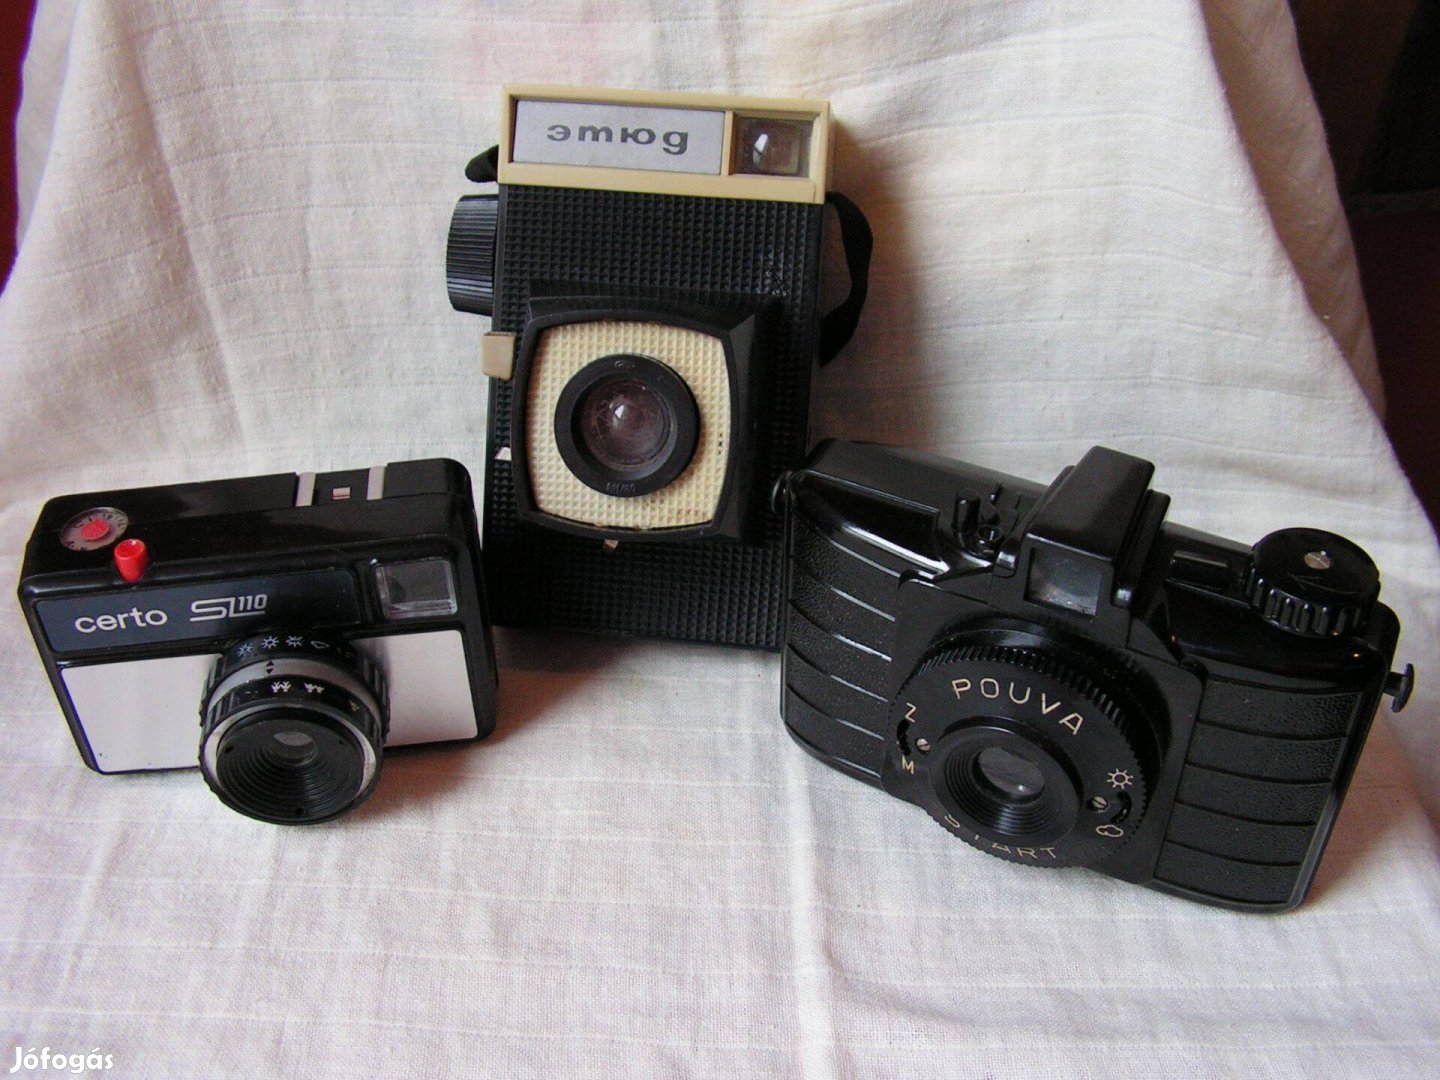 Etűd, Certo SL100, Pouva Start Filmes fényképezőgépek